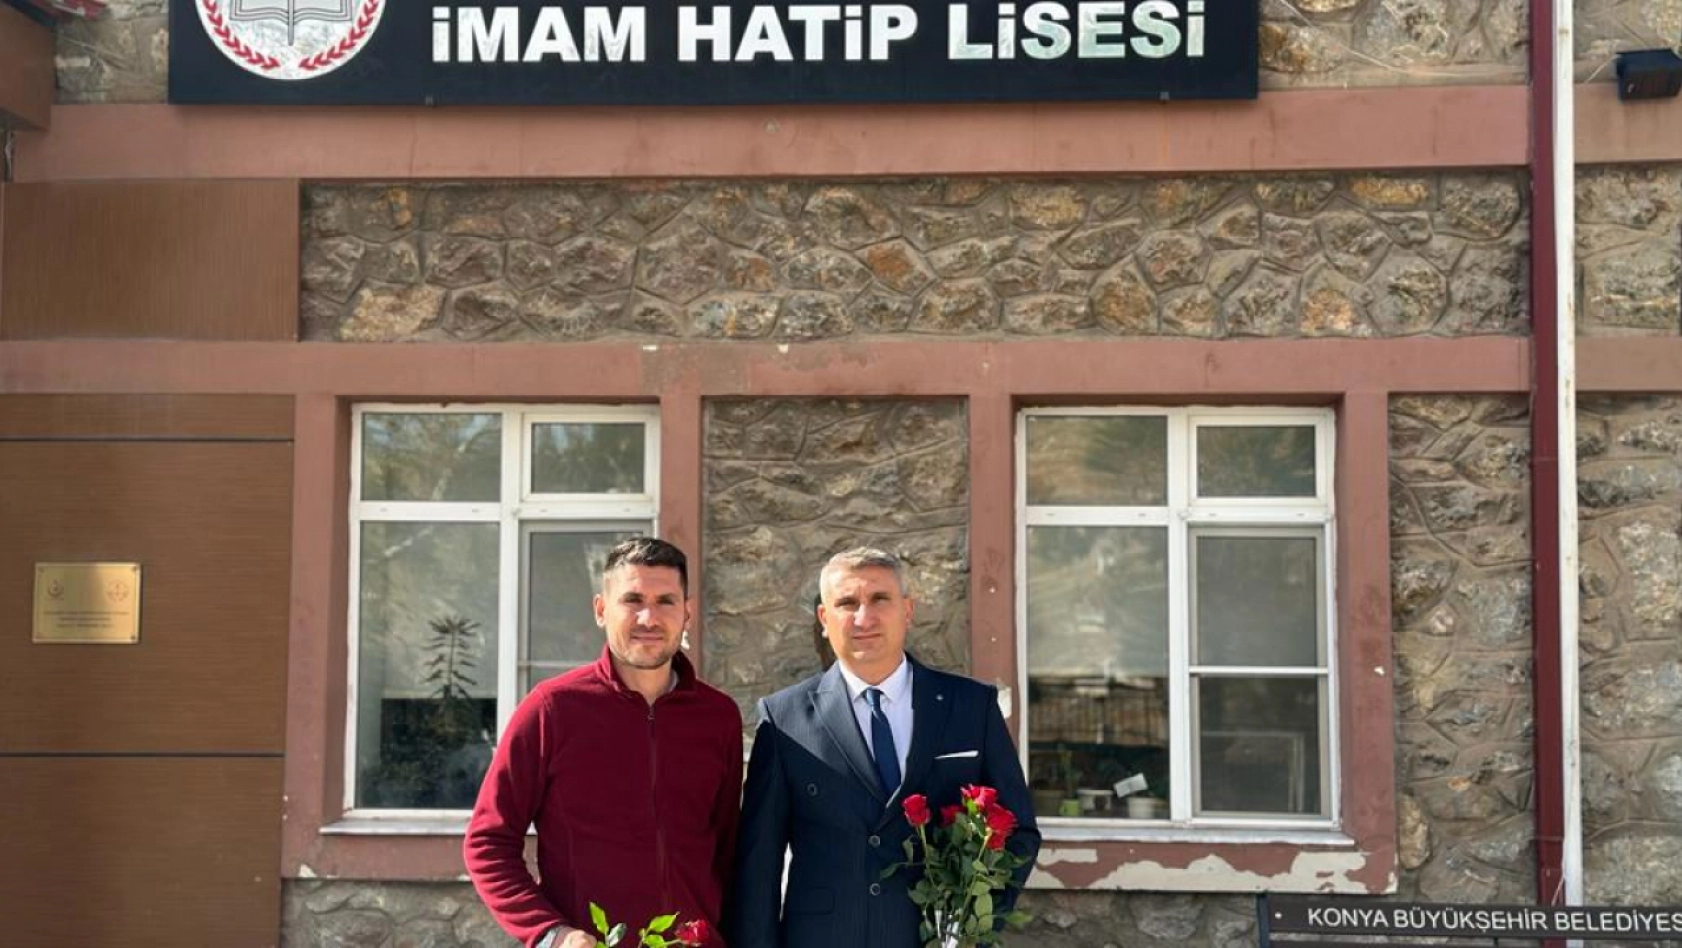 AK Parti Belediye Başkan Aday Adayı Salih Yazıcı'dan büyük jest! 19 kurumda tek tek gül dağıttı